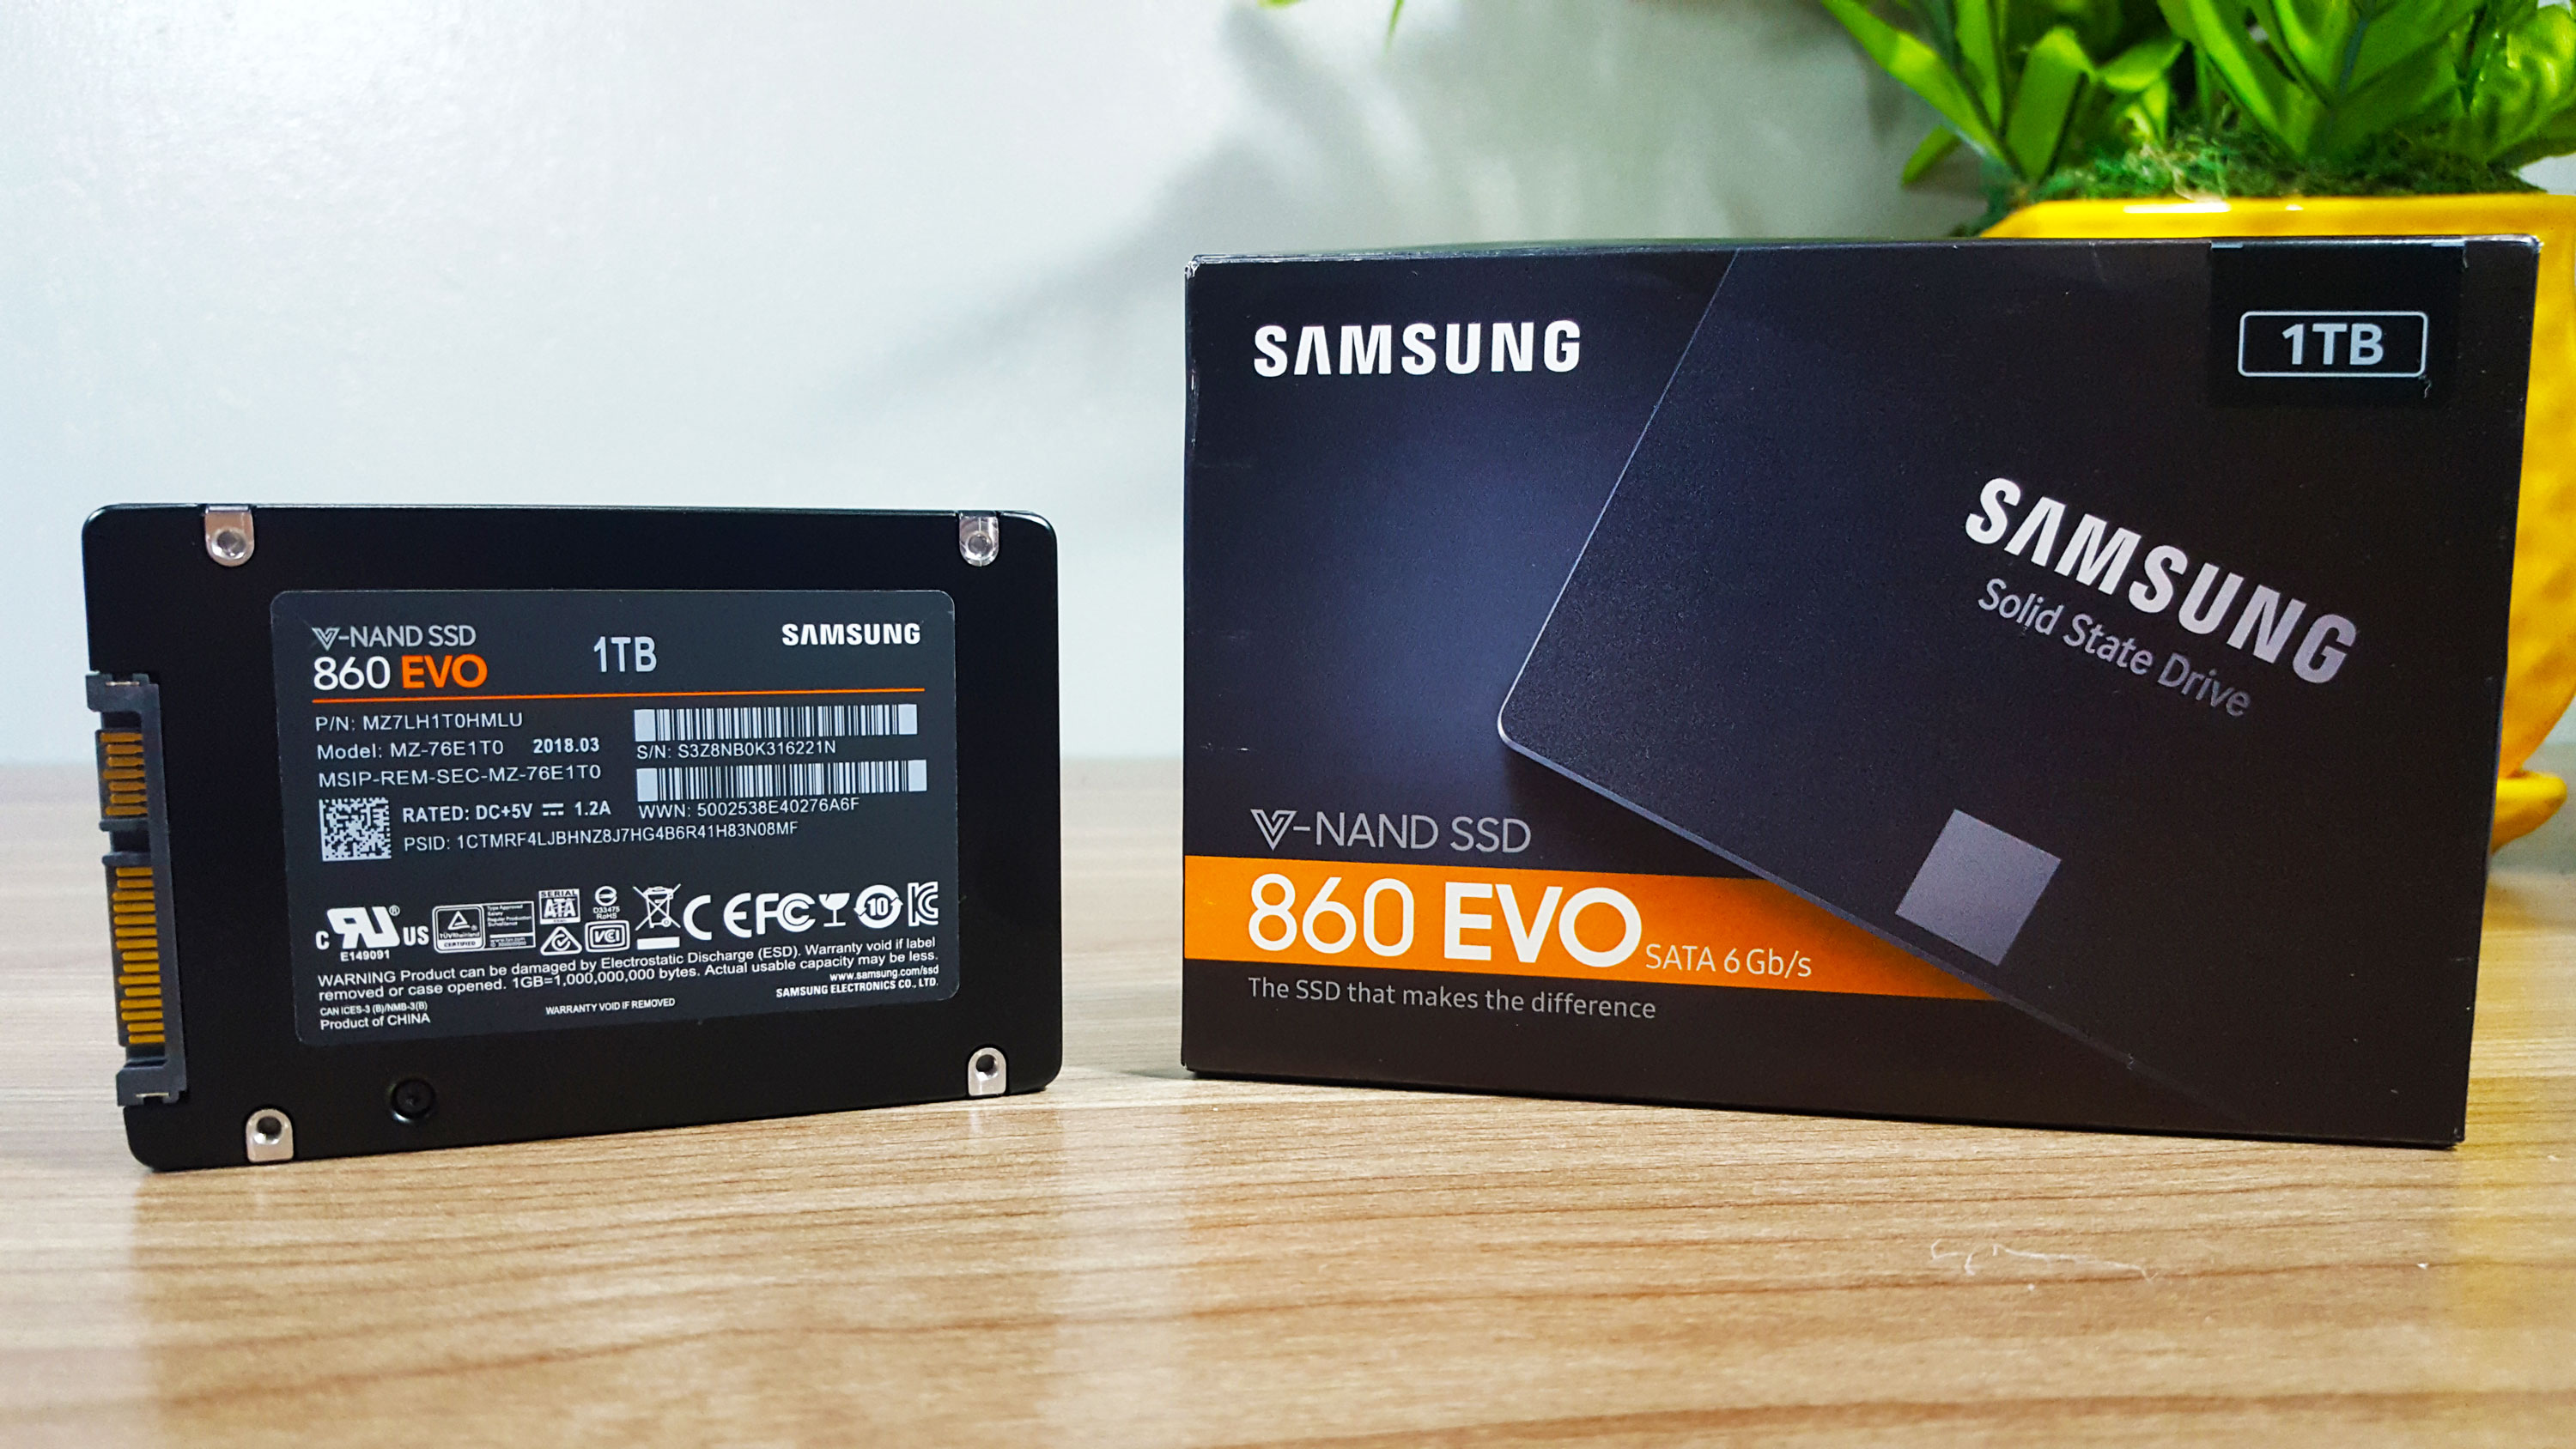 Samsung 860 EVO 1TB SSD SATA 6Gb/s Review – GamingPH.com